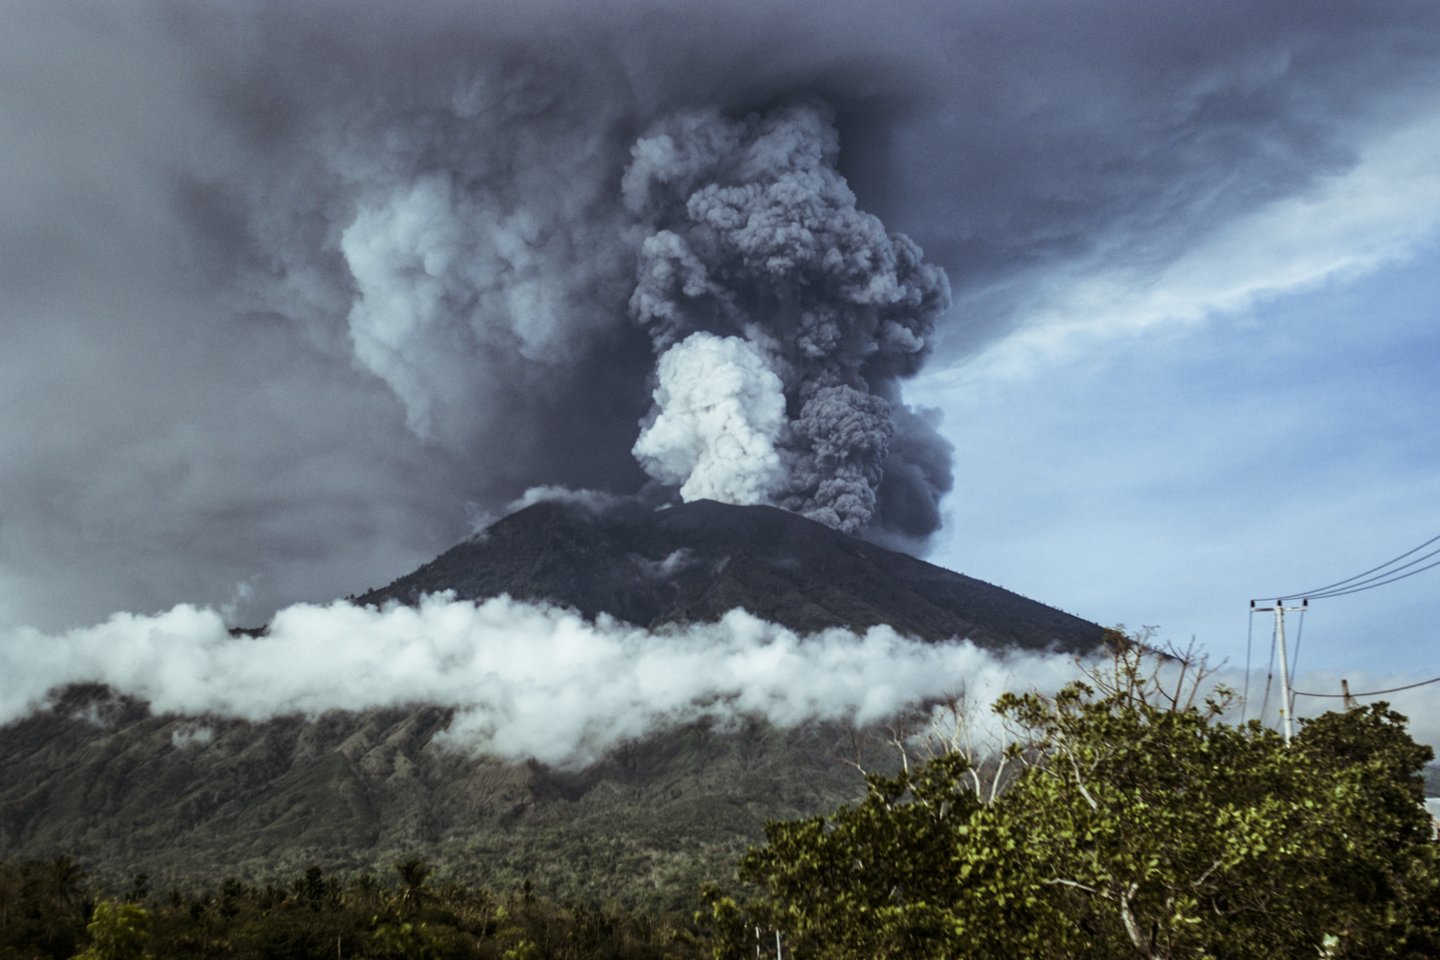  S.Keanas sako, kad kadaise, maždaug 70 000 metais prieš mūsų erą, Tobos ugnikalnis egzistavo Sumatroje, Indonezijoje – ir garu pavertęs uolienas, jas nupūtė 1000 kilometrų (asociatyvinė nuotr.)<br> 123rf nuotr.